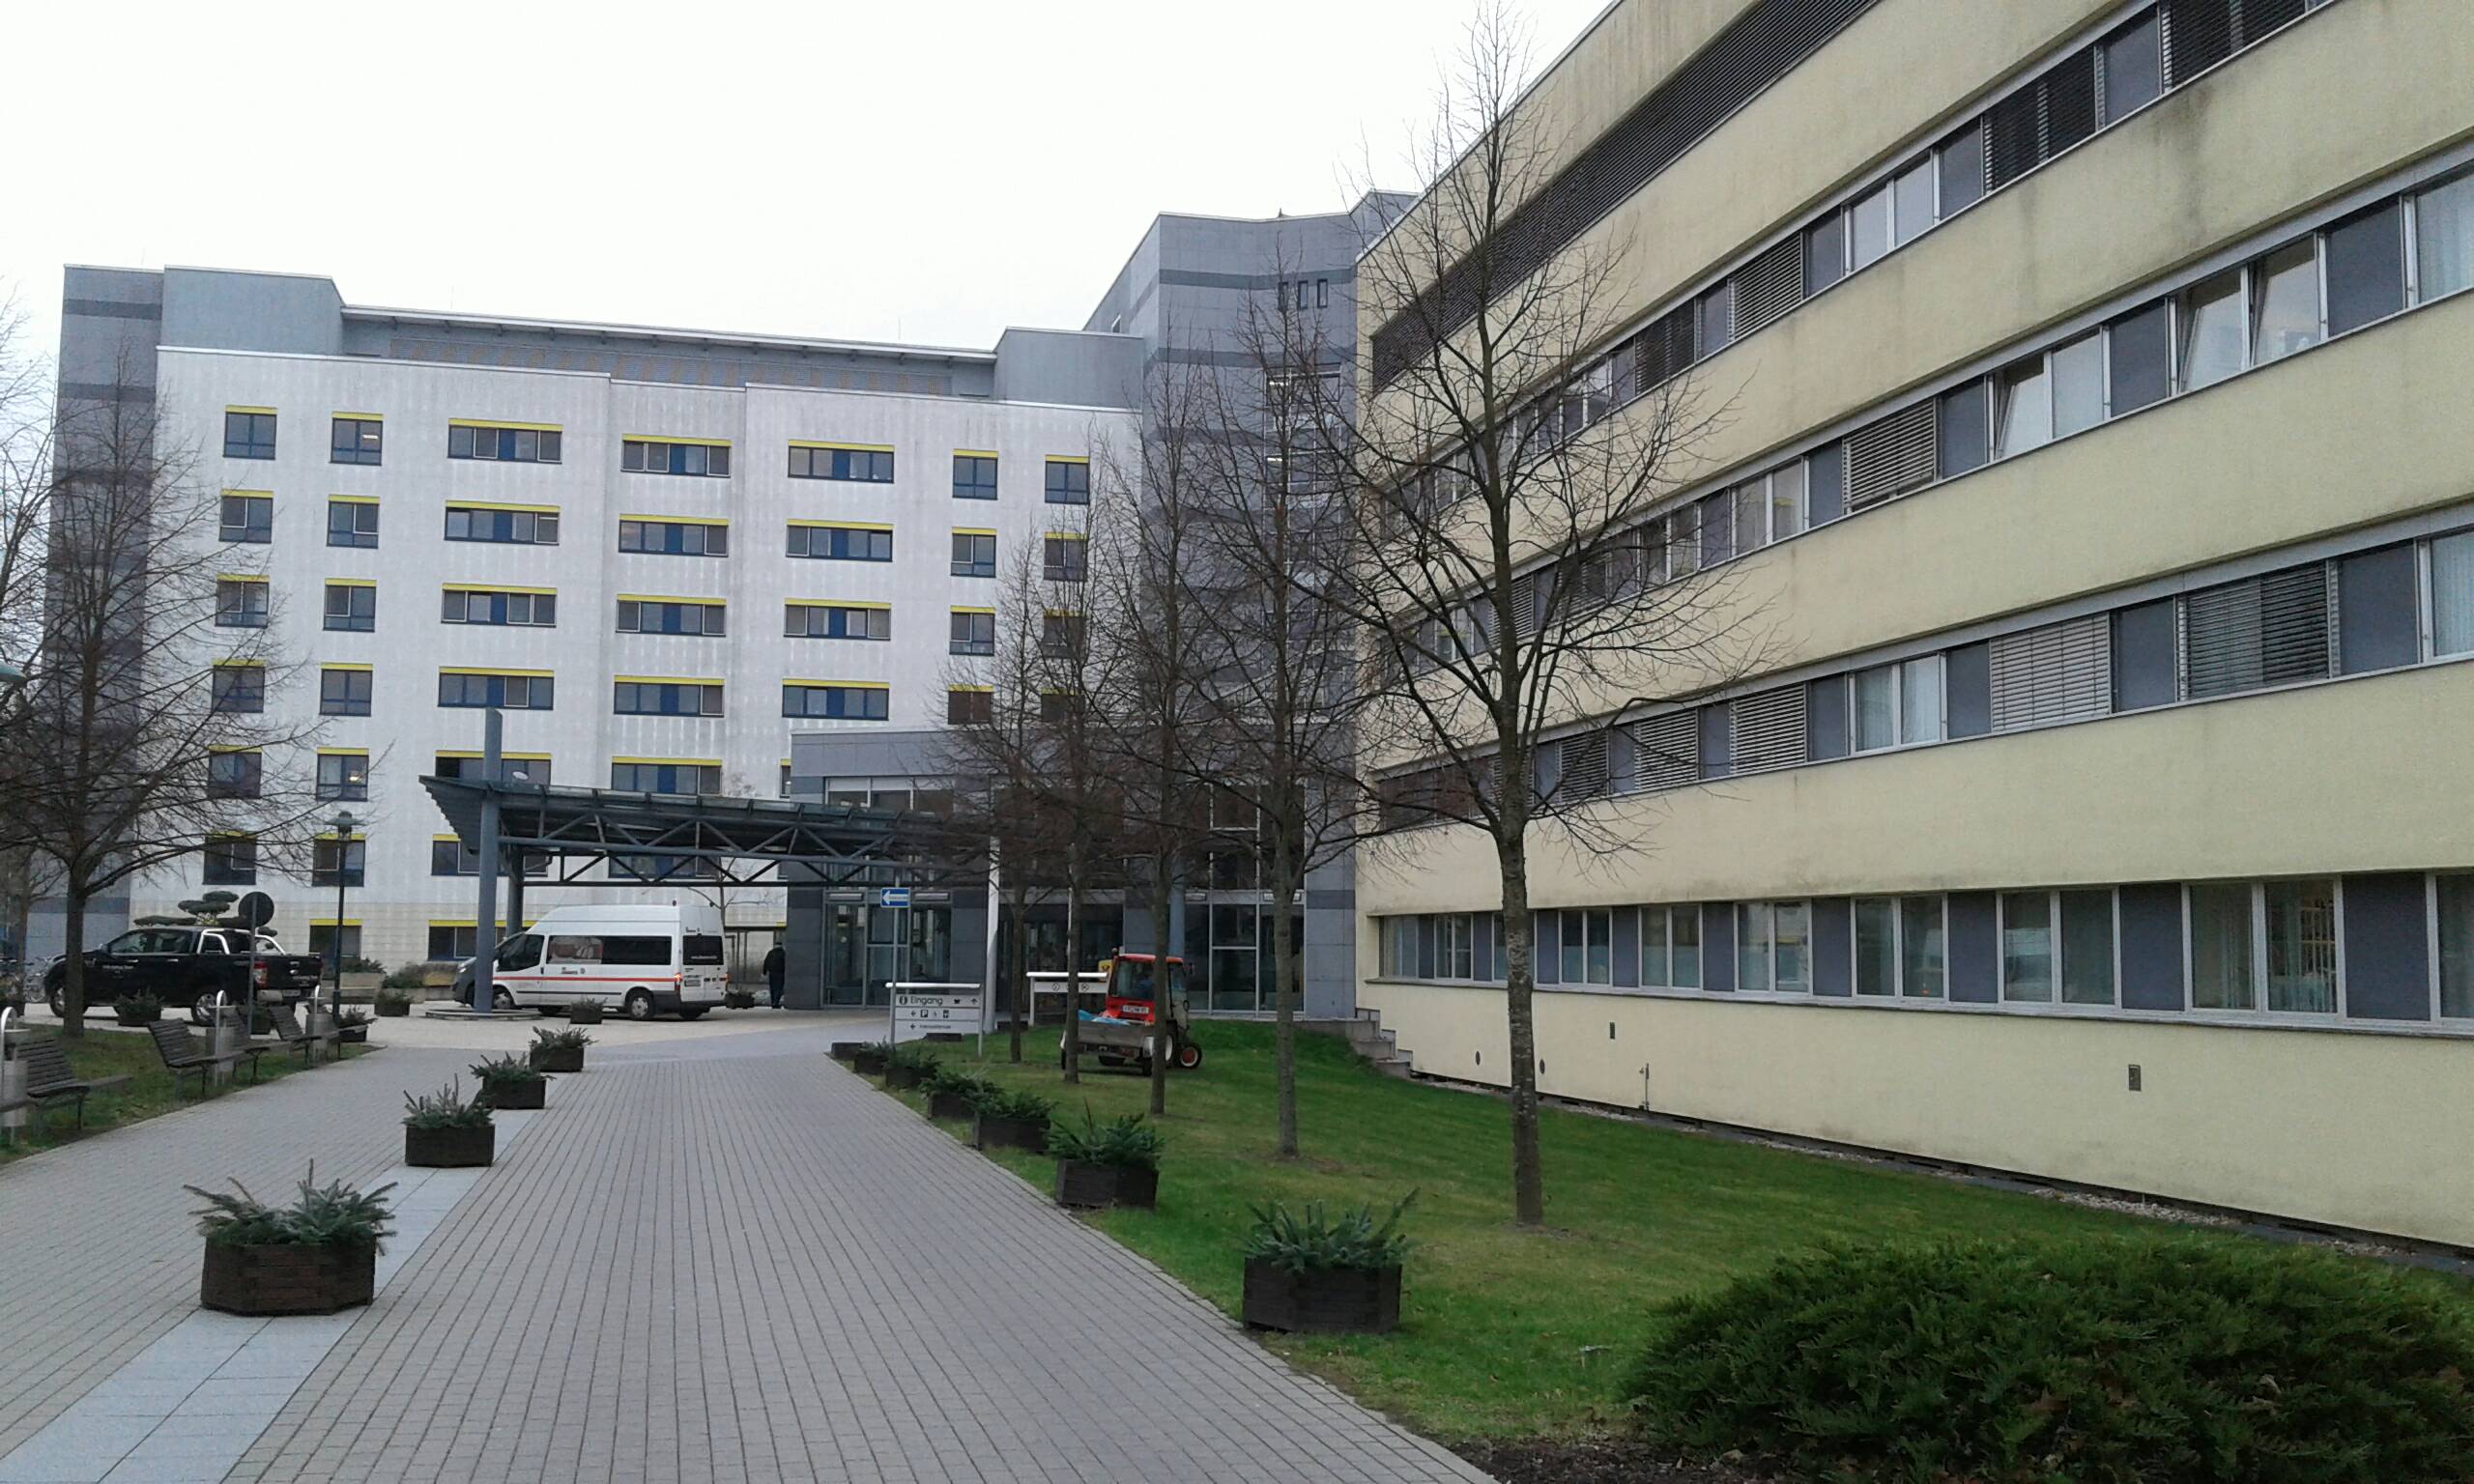 Klinikum Frankfurt (Oder) GmbH in 15236 Frankfurt (Oder)-Markendorf